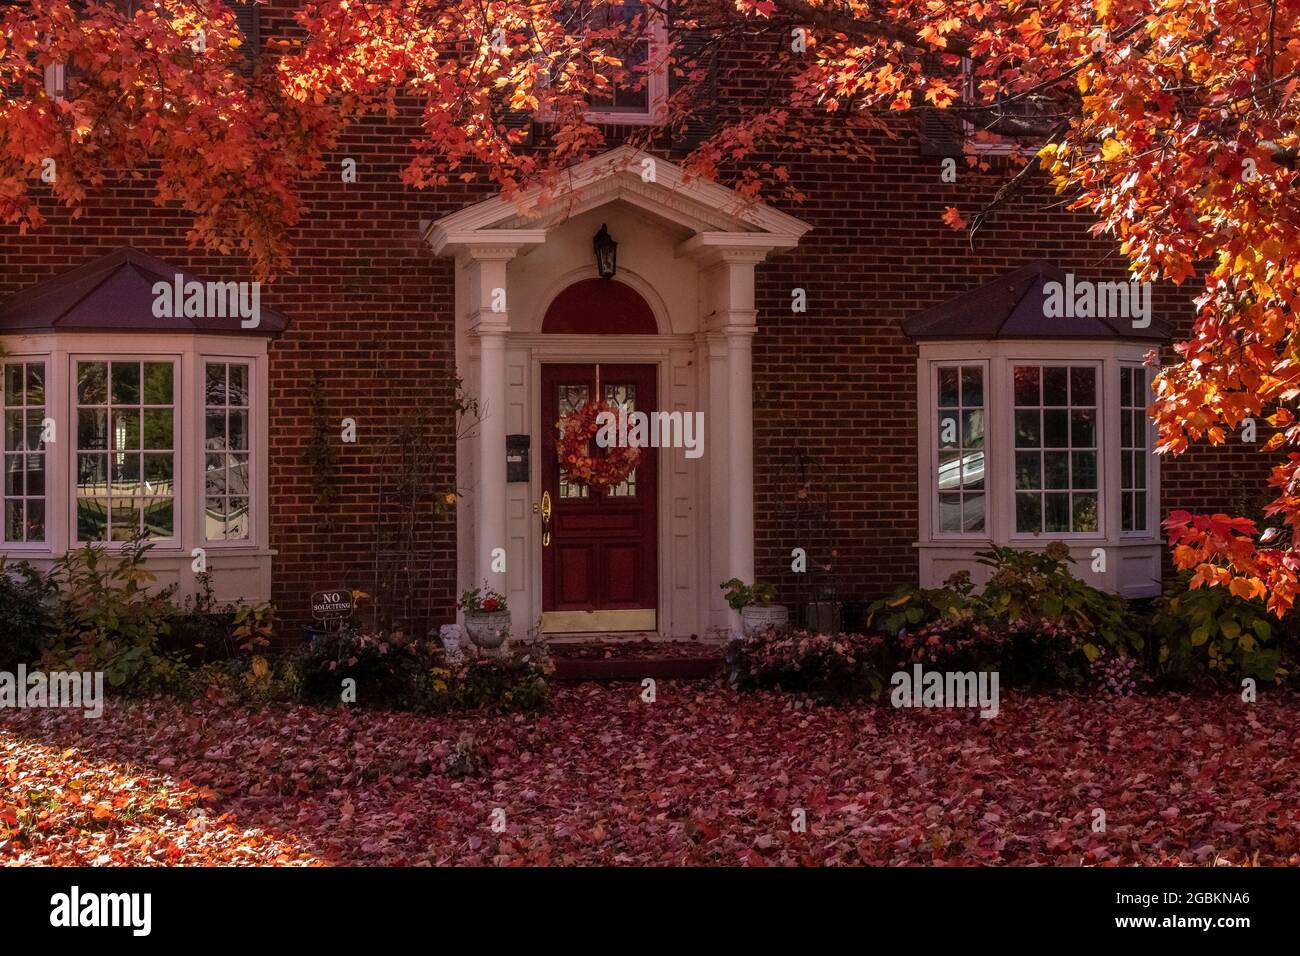 Belle maison en brique avec baies vitrées et colonnes et couronne de porte rouge à l'ombre des érables en automne - cour couverte de feuilles et jamais Banque D'Images